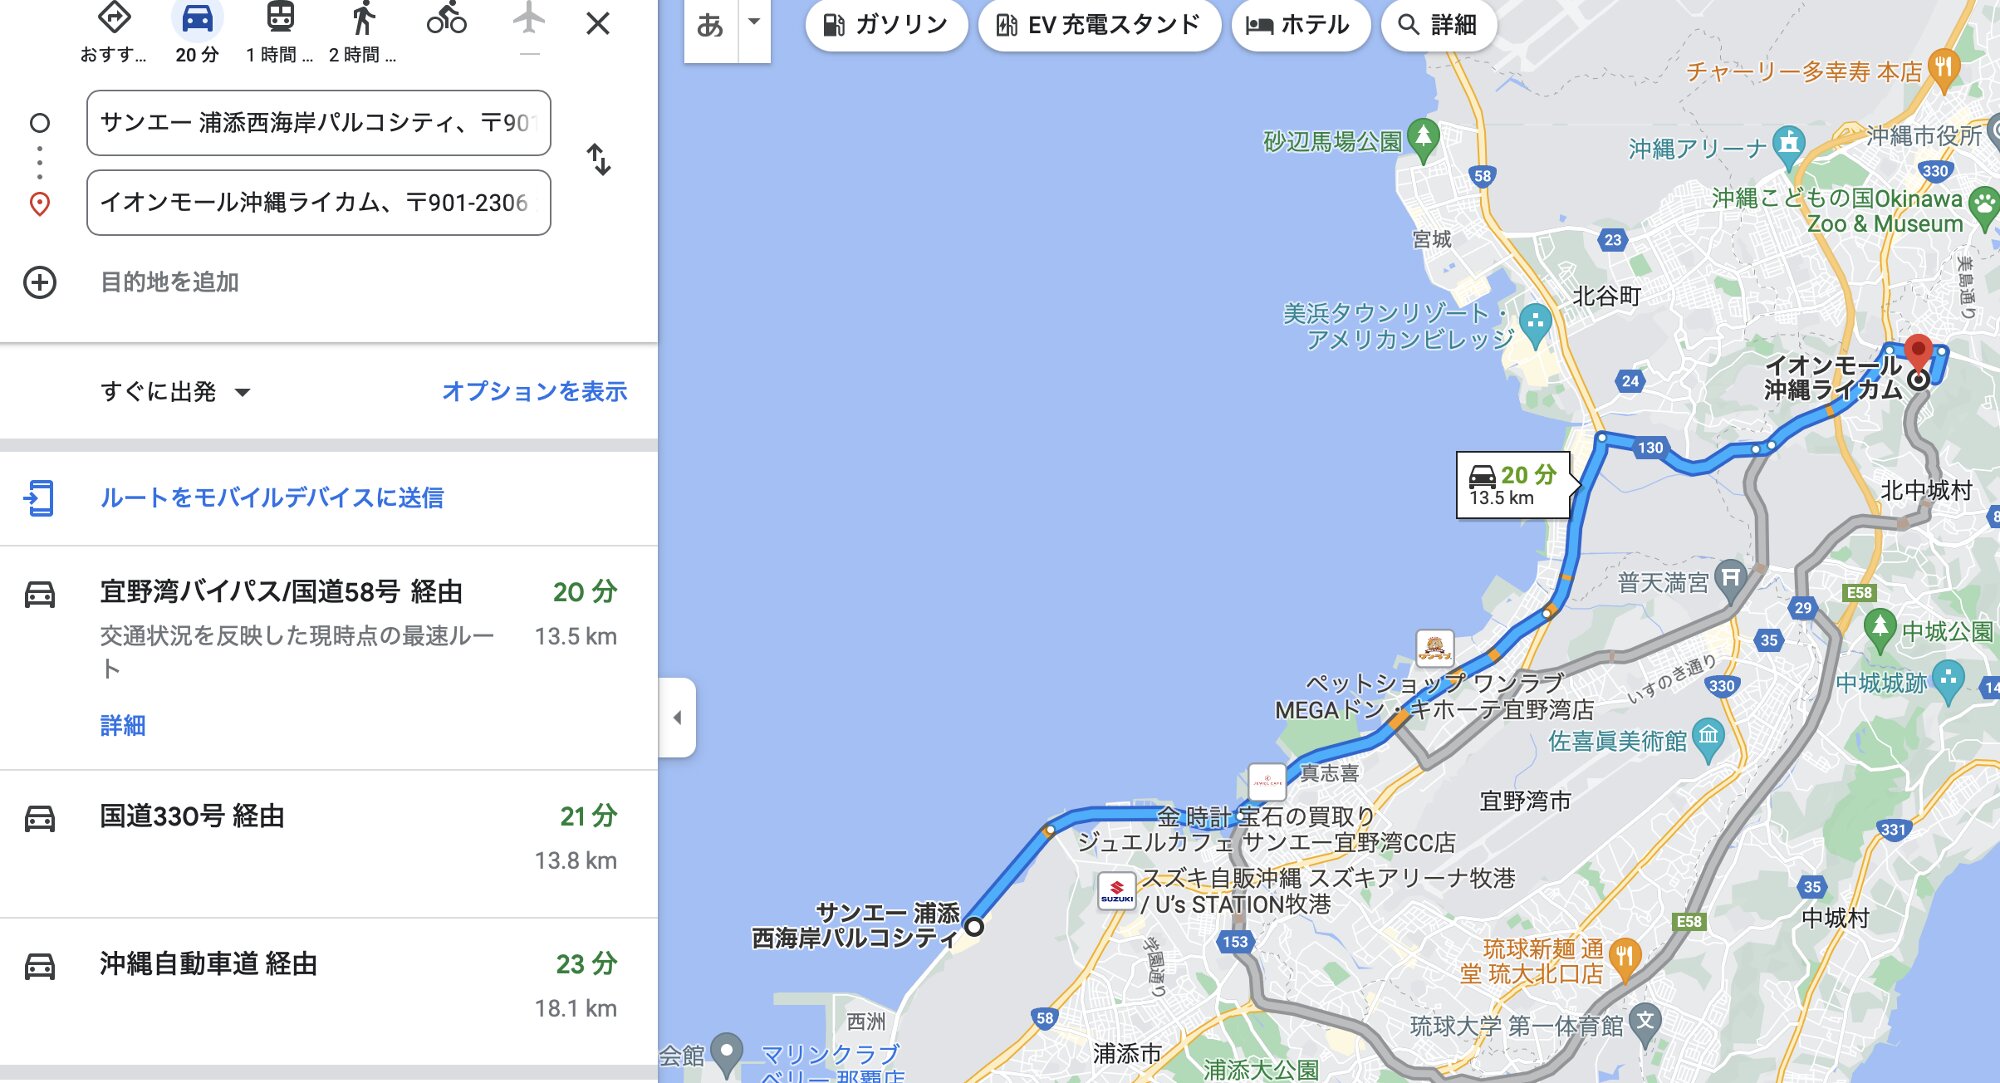 パルコシティ⇔イオンモール沖縄ライカムは車で20〜30分圏内です。Googleマップのルート検索より引用